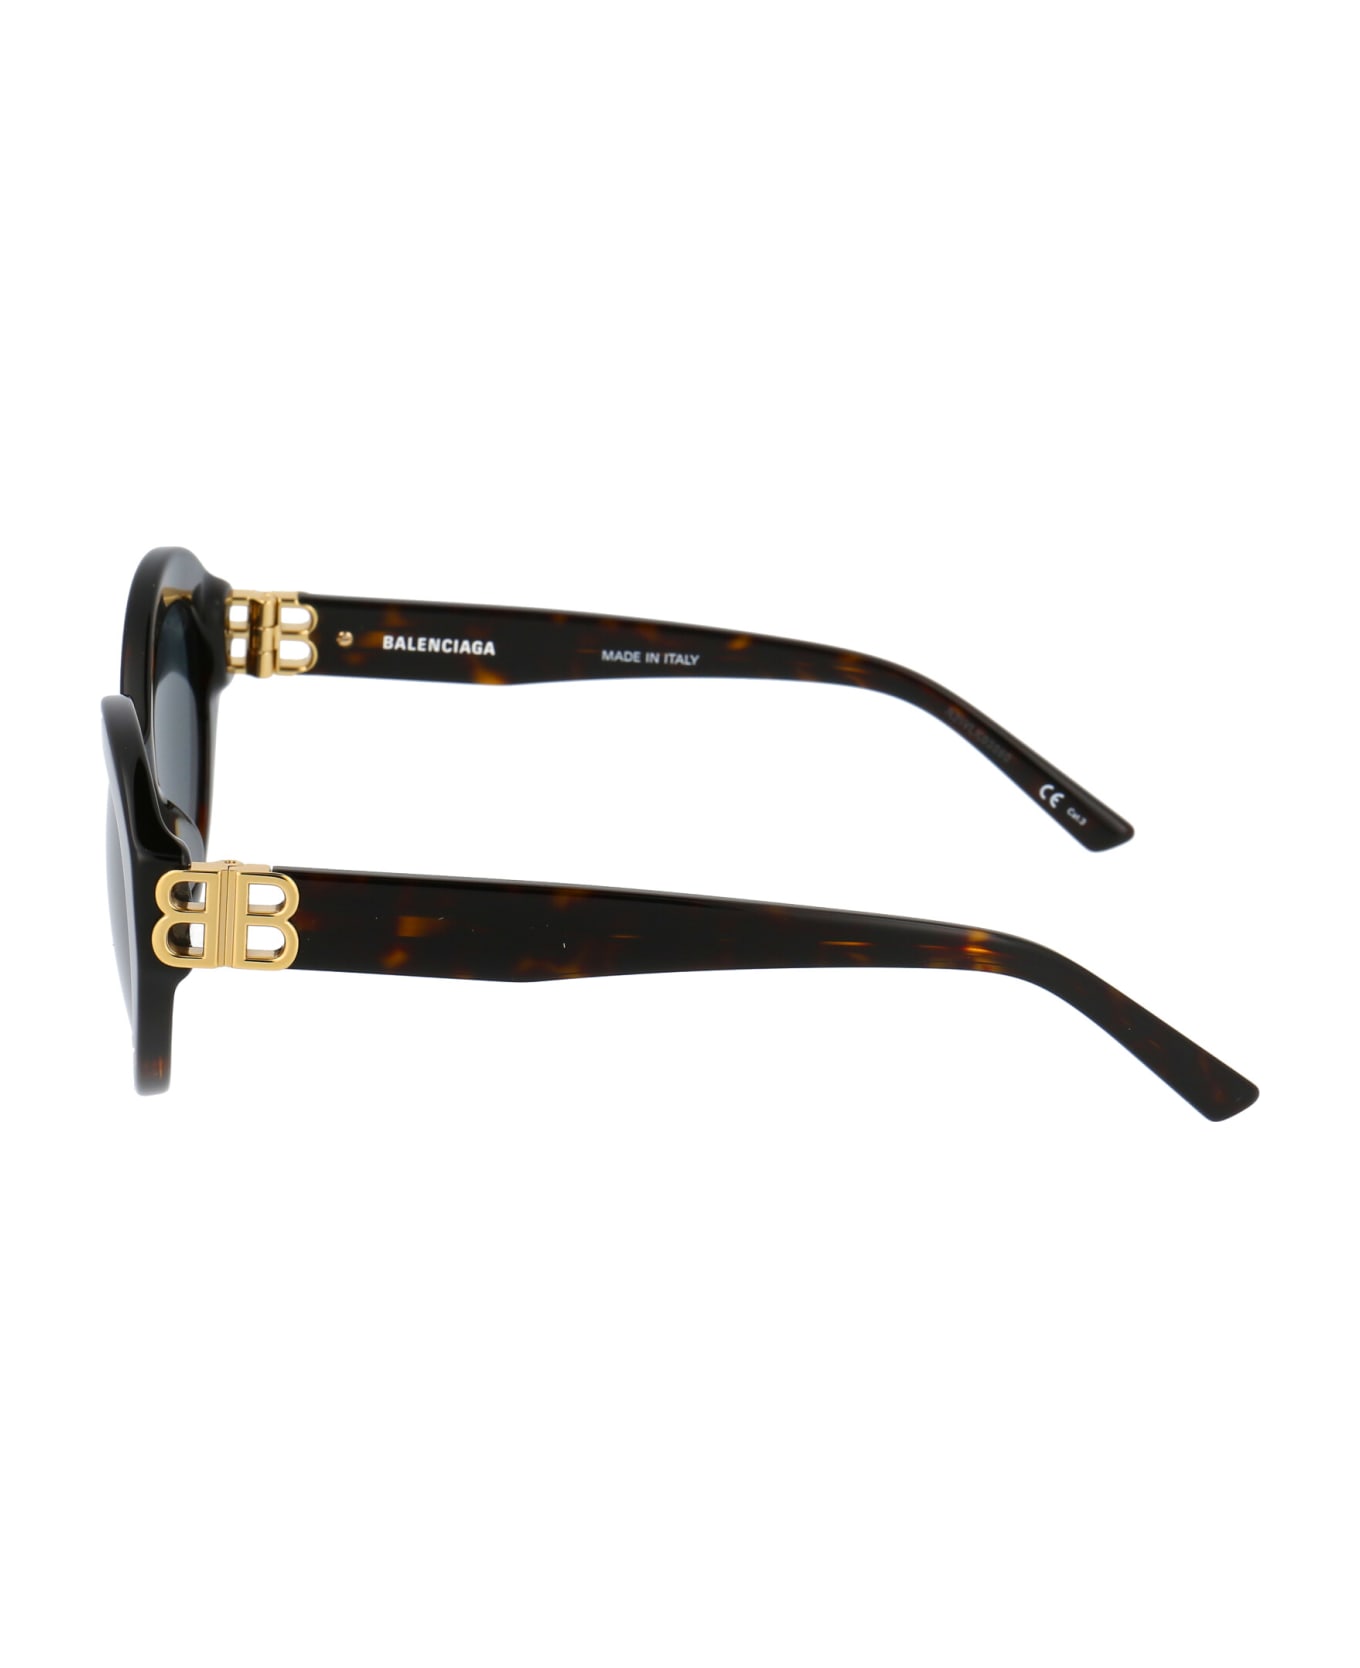 Balenciaga Eyewear Bb0133s Sunglasses - 002 HAVANA GOLD GREEN